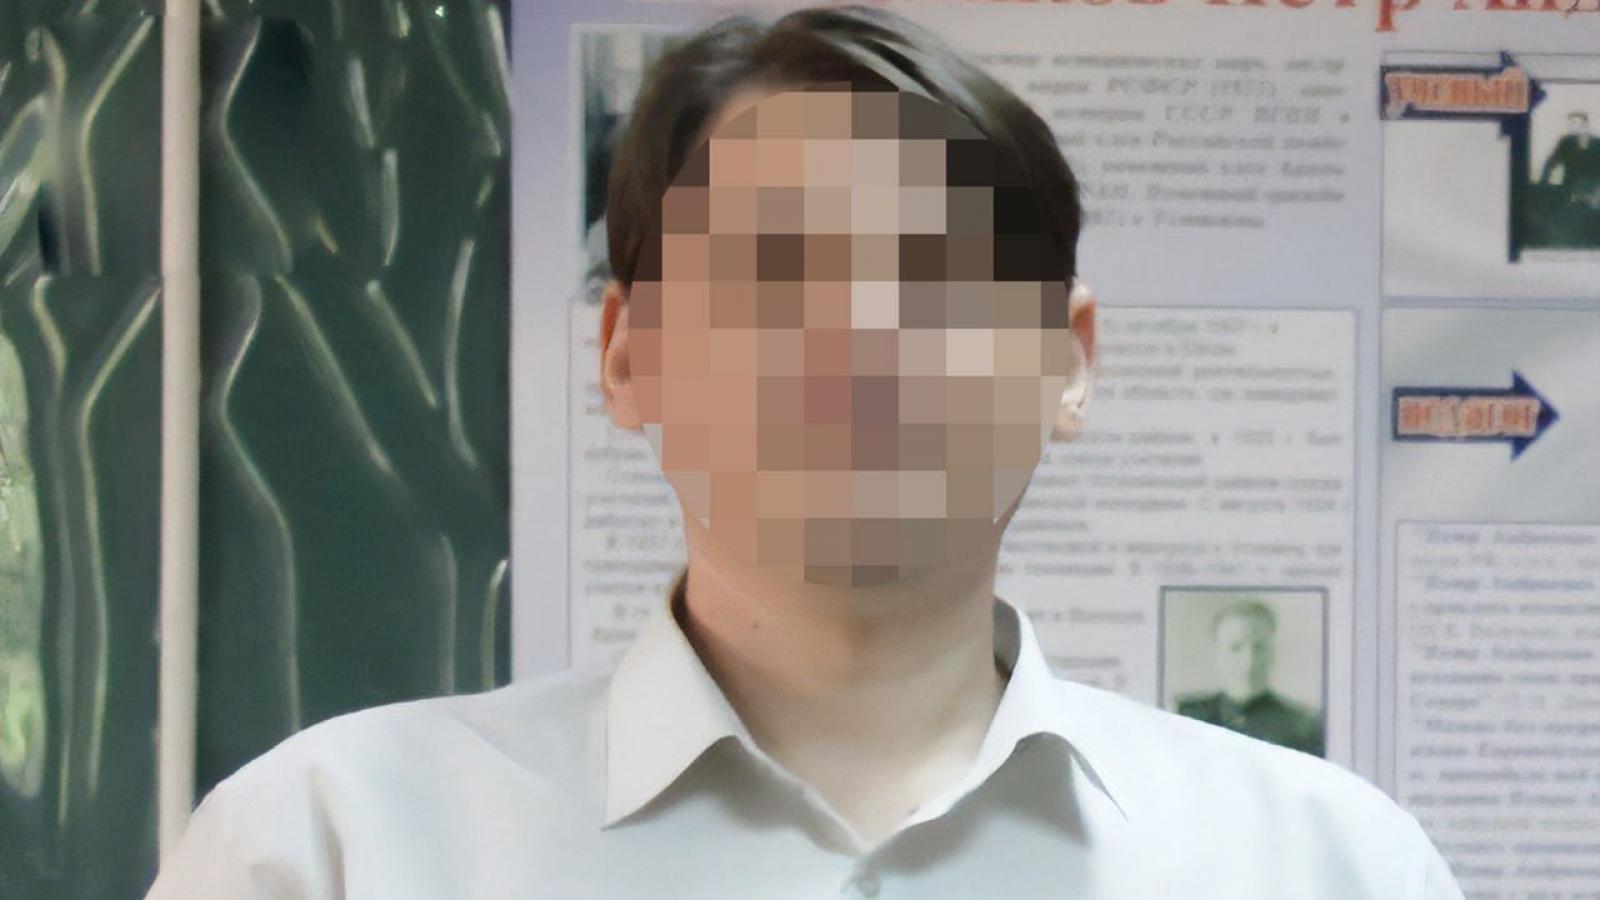 Вологодский учитель отправлял ученице обнаженные фото